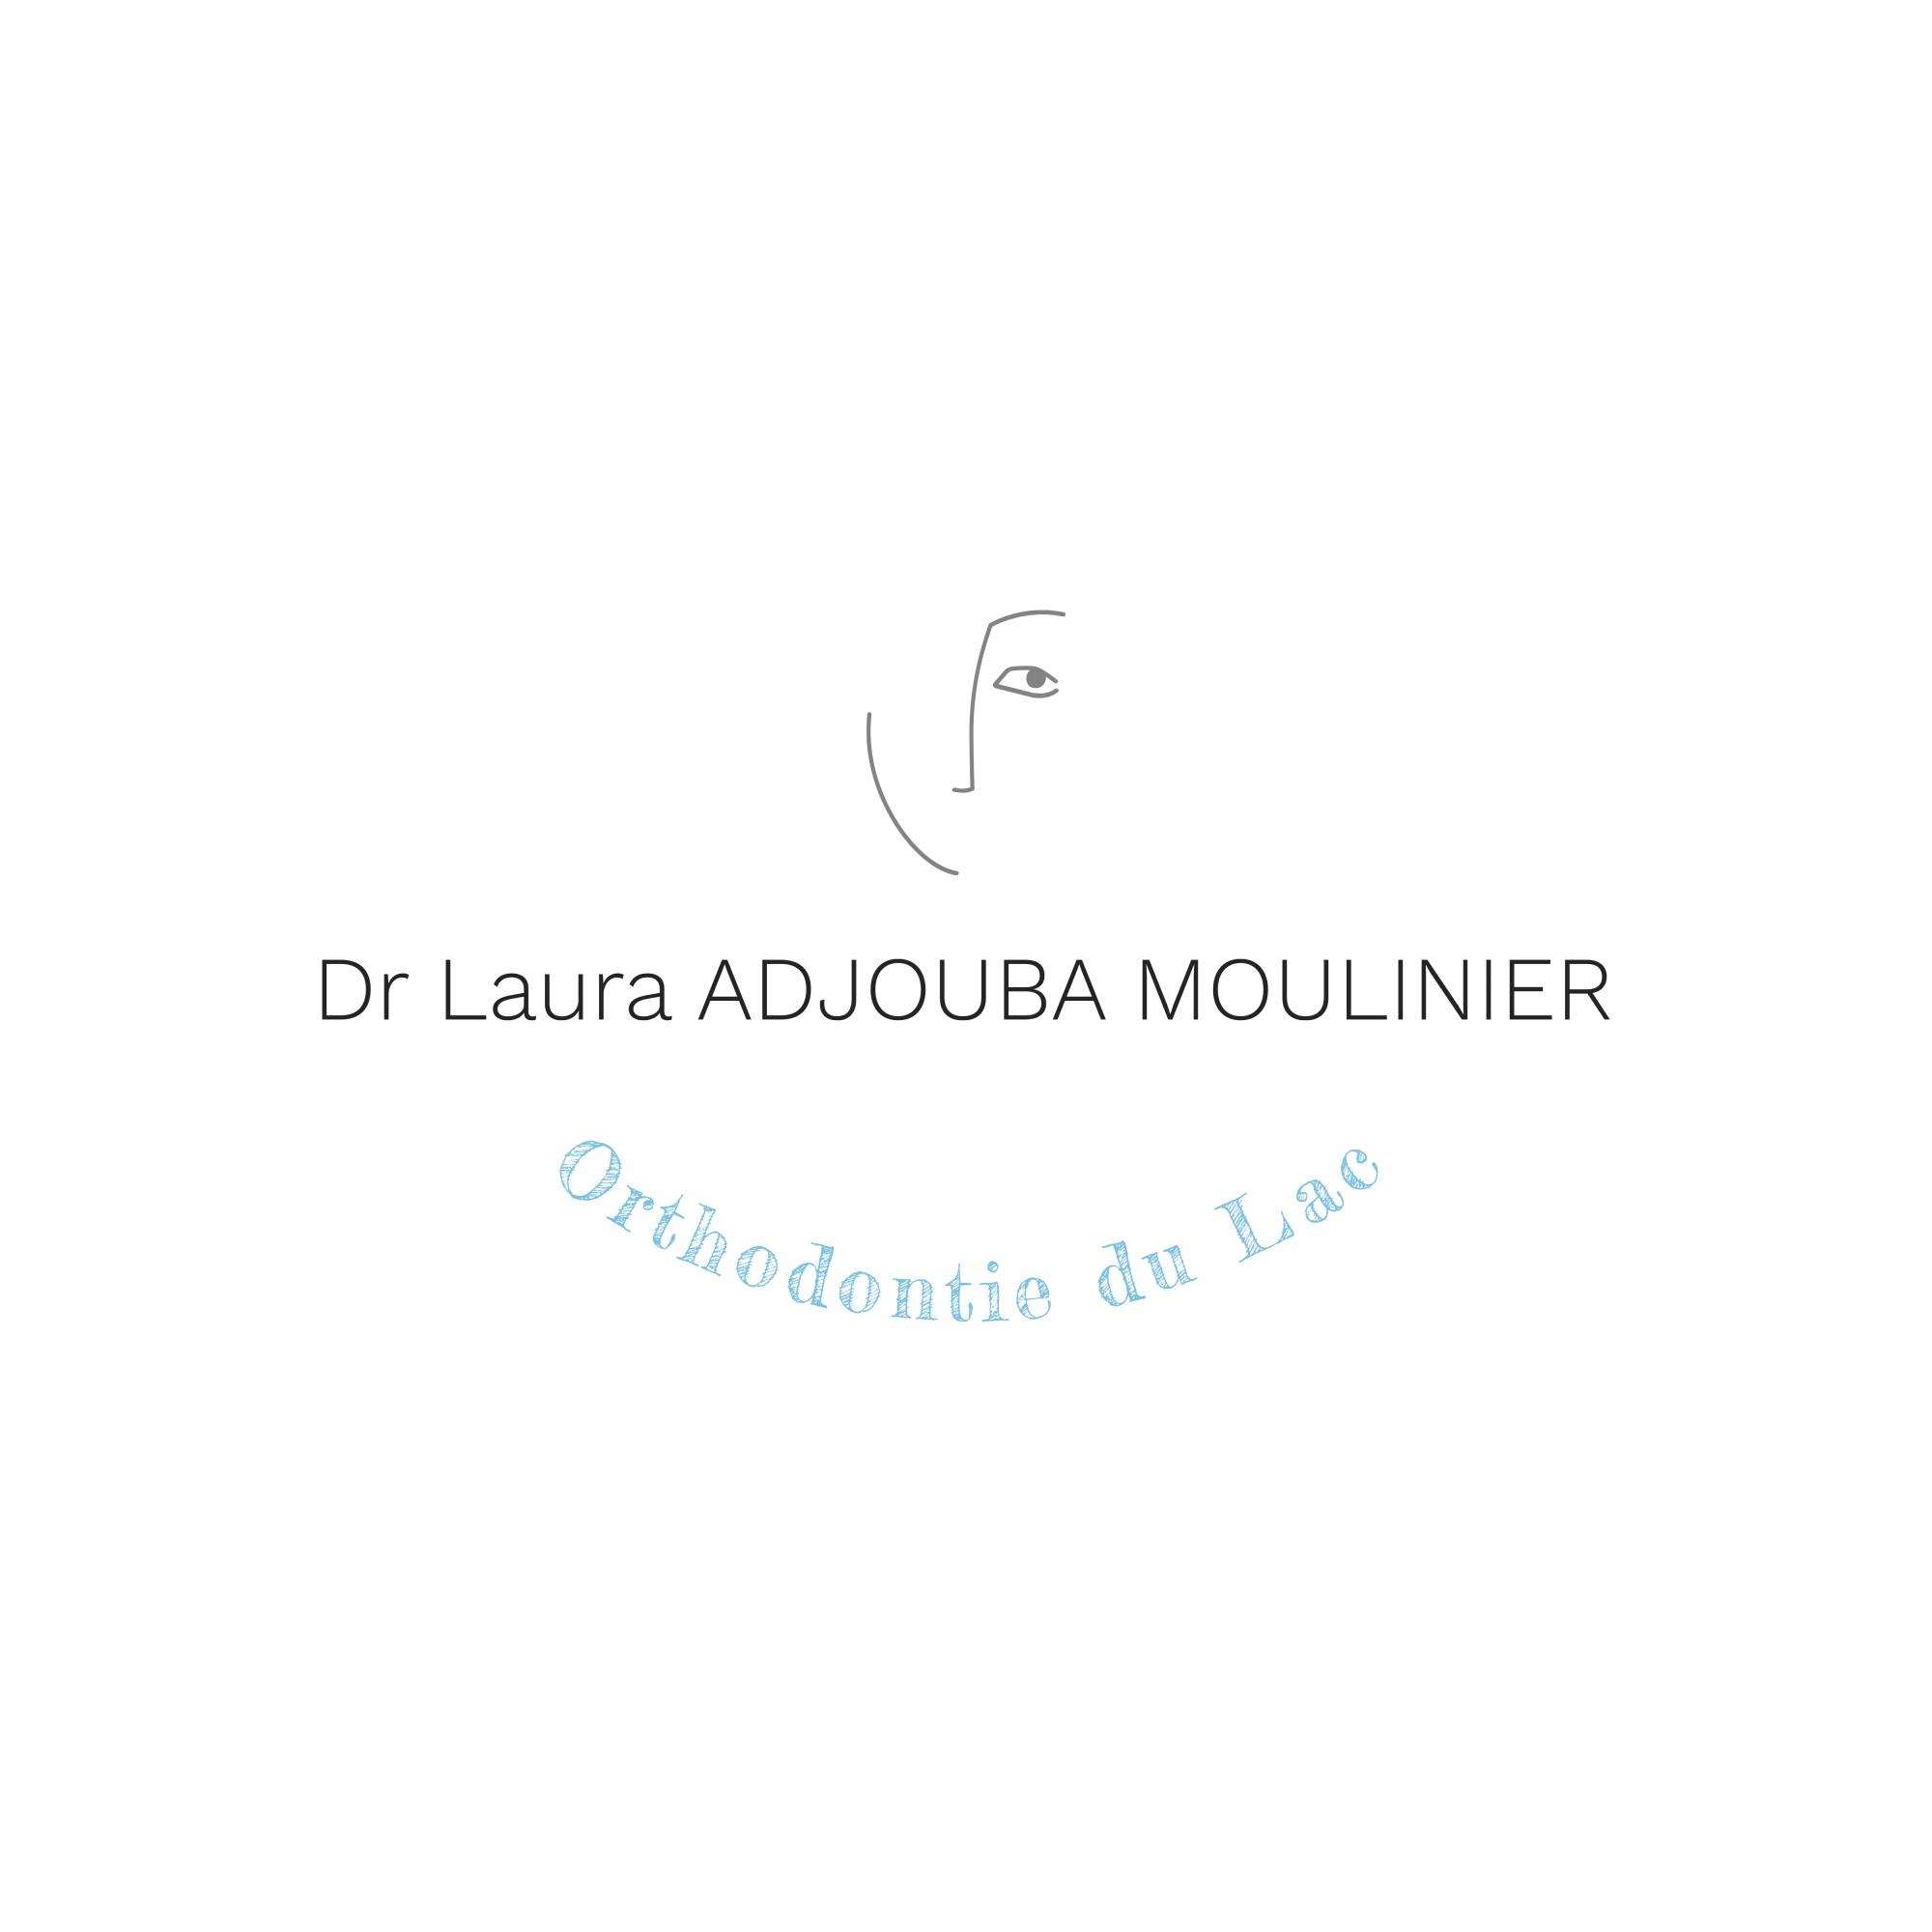 Orthodontiste Spécialiste - Dr Laura Adjouba-moulinier - Enghien-les-bains Enghien Les Bains